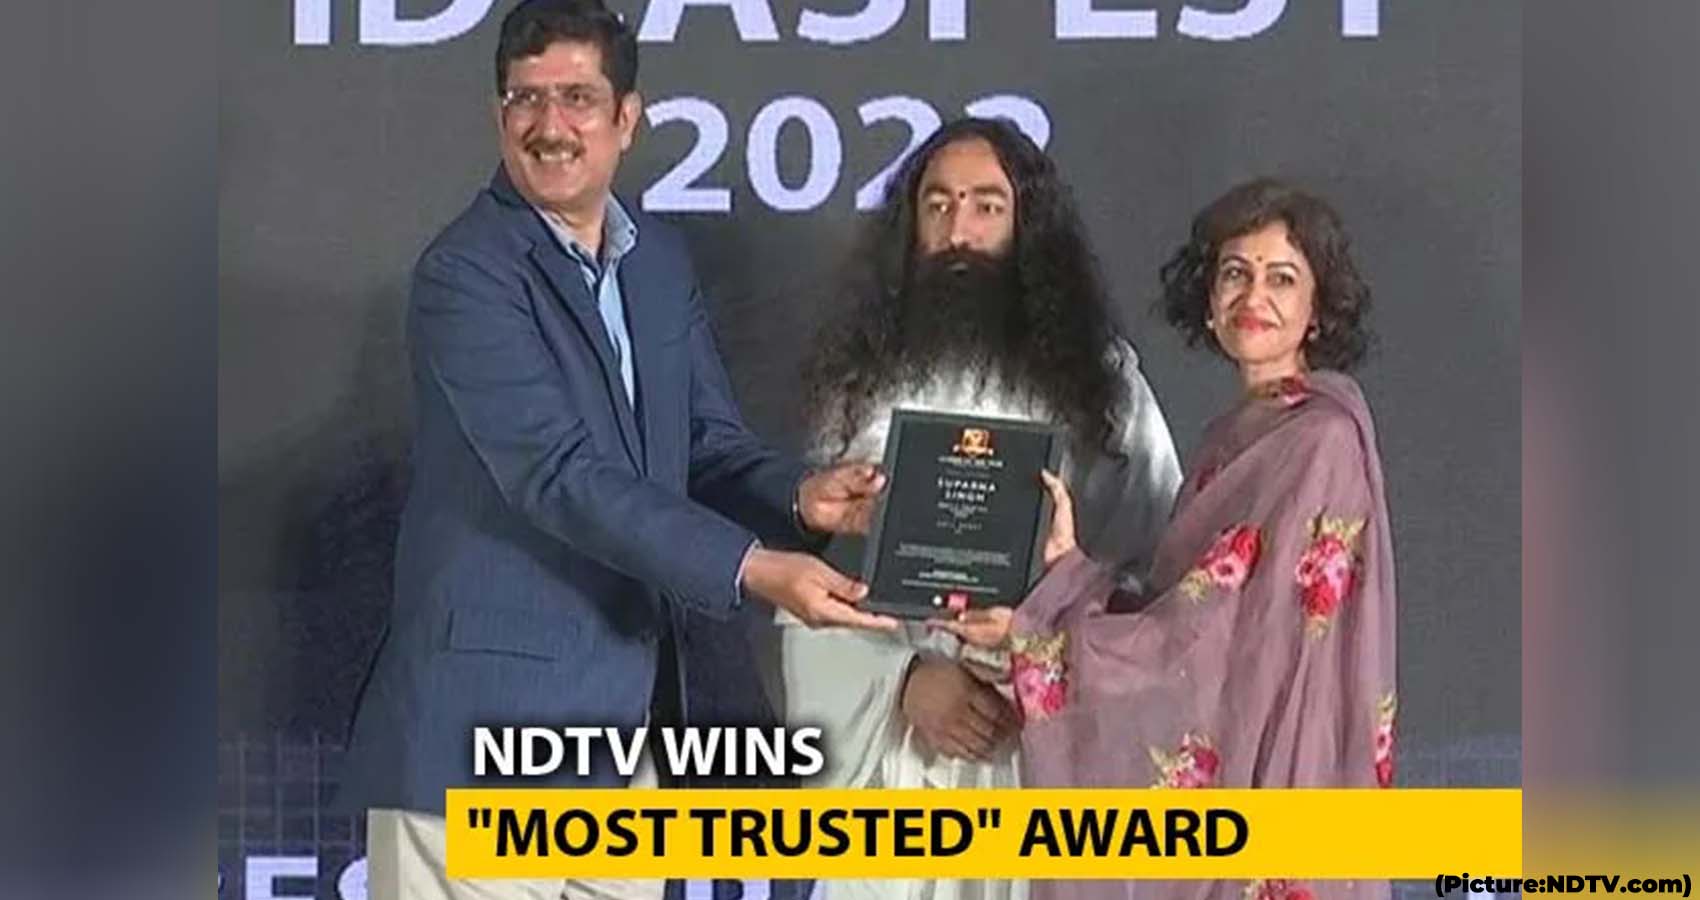 NDTV’s Sreenivasan Jain, Suparna Singh Win “Most Trusted” Awards